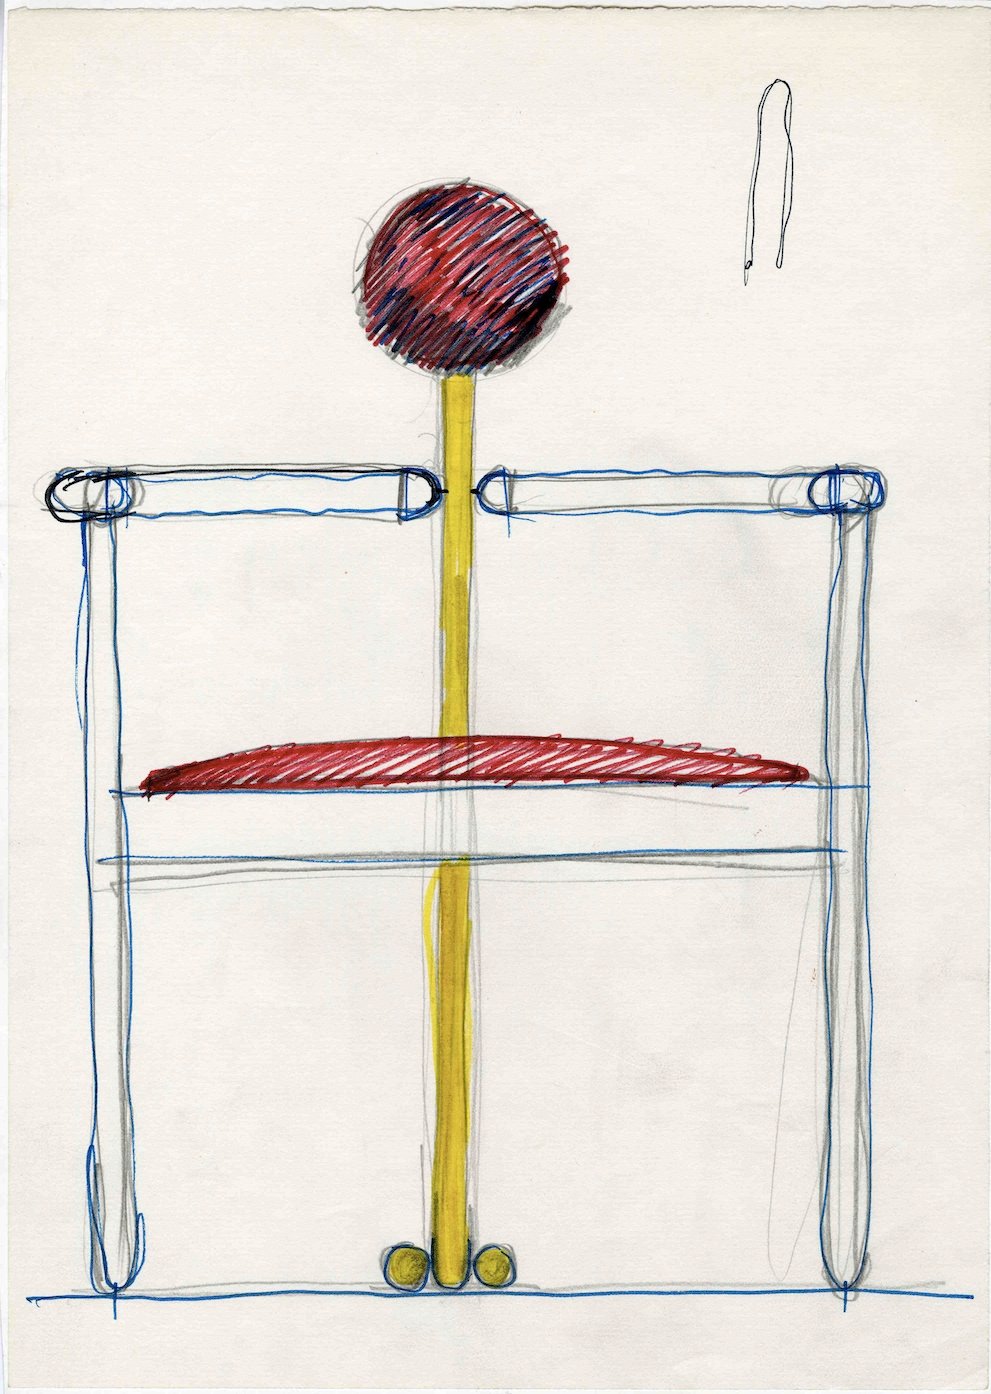 Schizzo di Vico Magistretti, Pan, prod. Rosenthal Studio Linie, 1980 © Fondazione studio museo Vico Magistretti